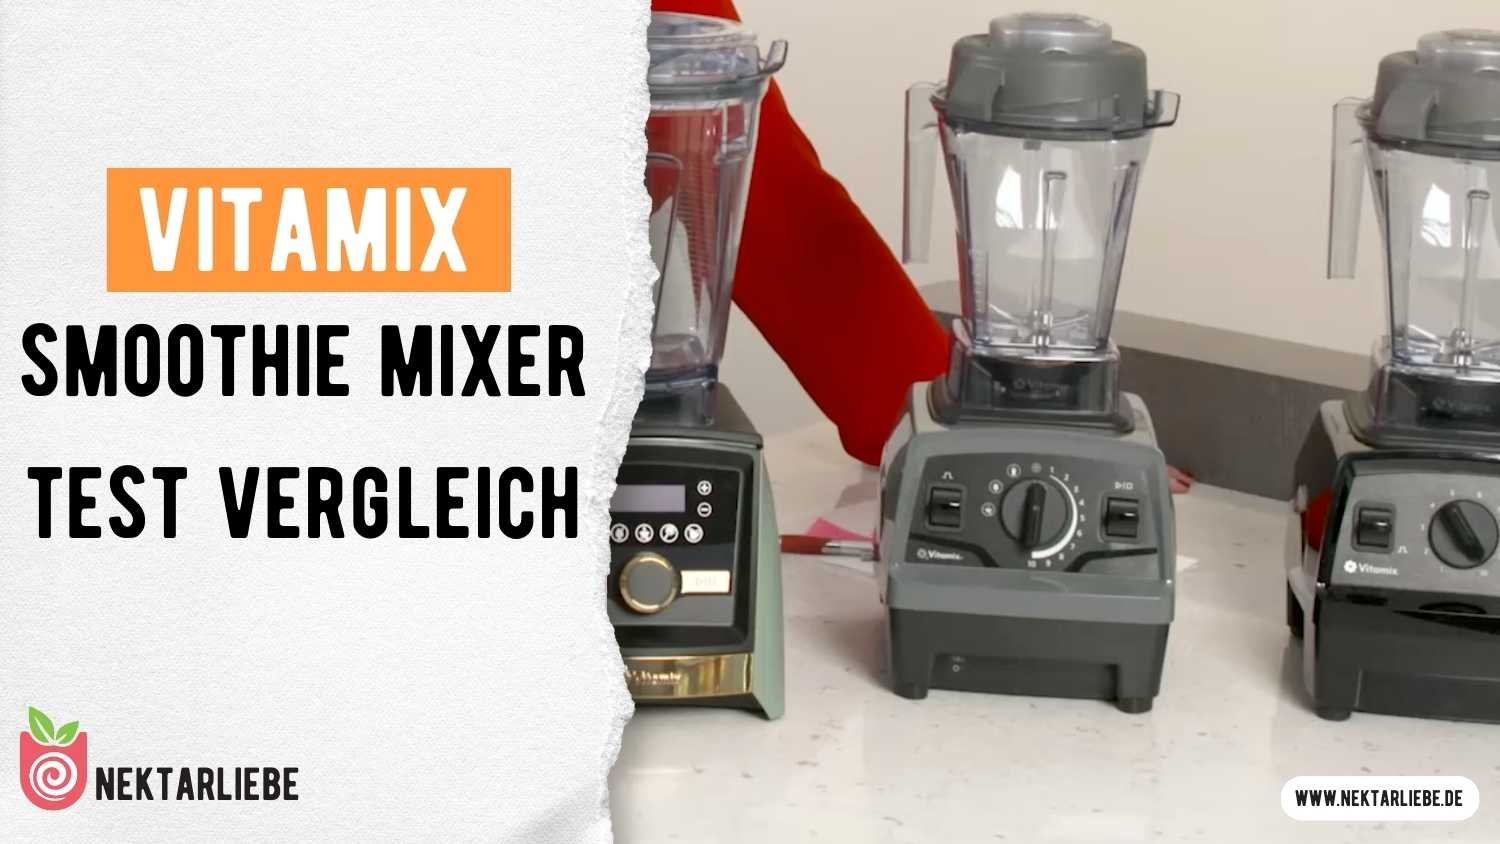 Vitamix Smoothie Mixer